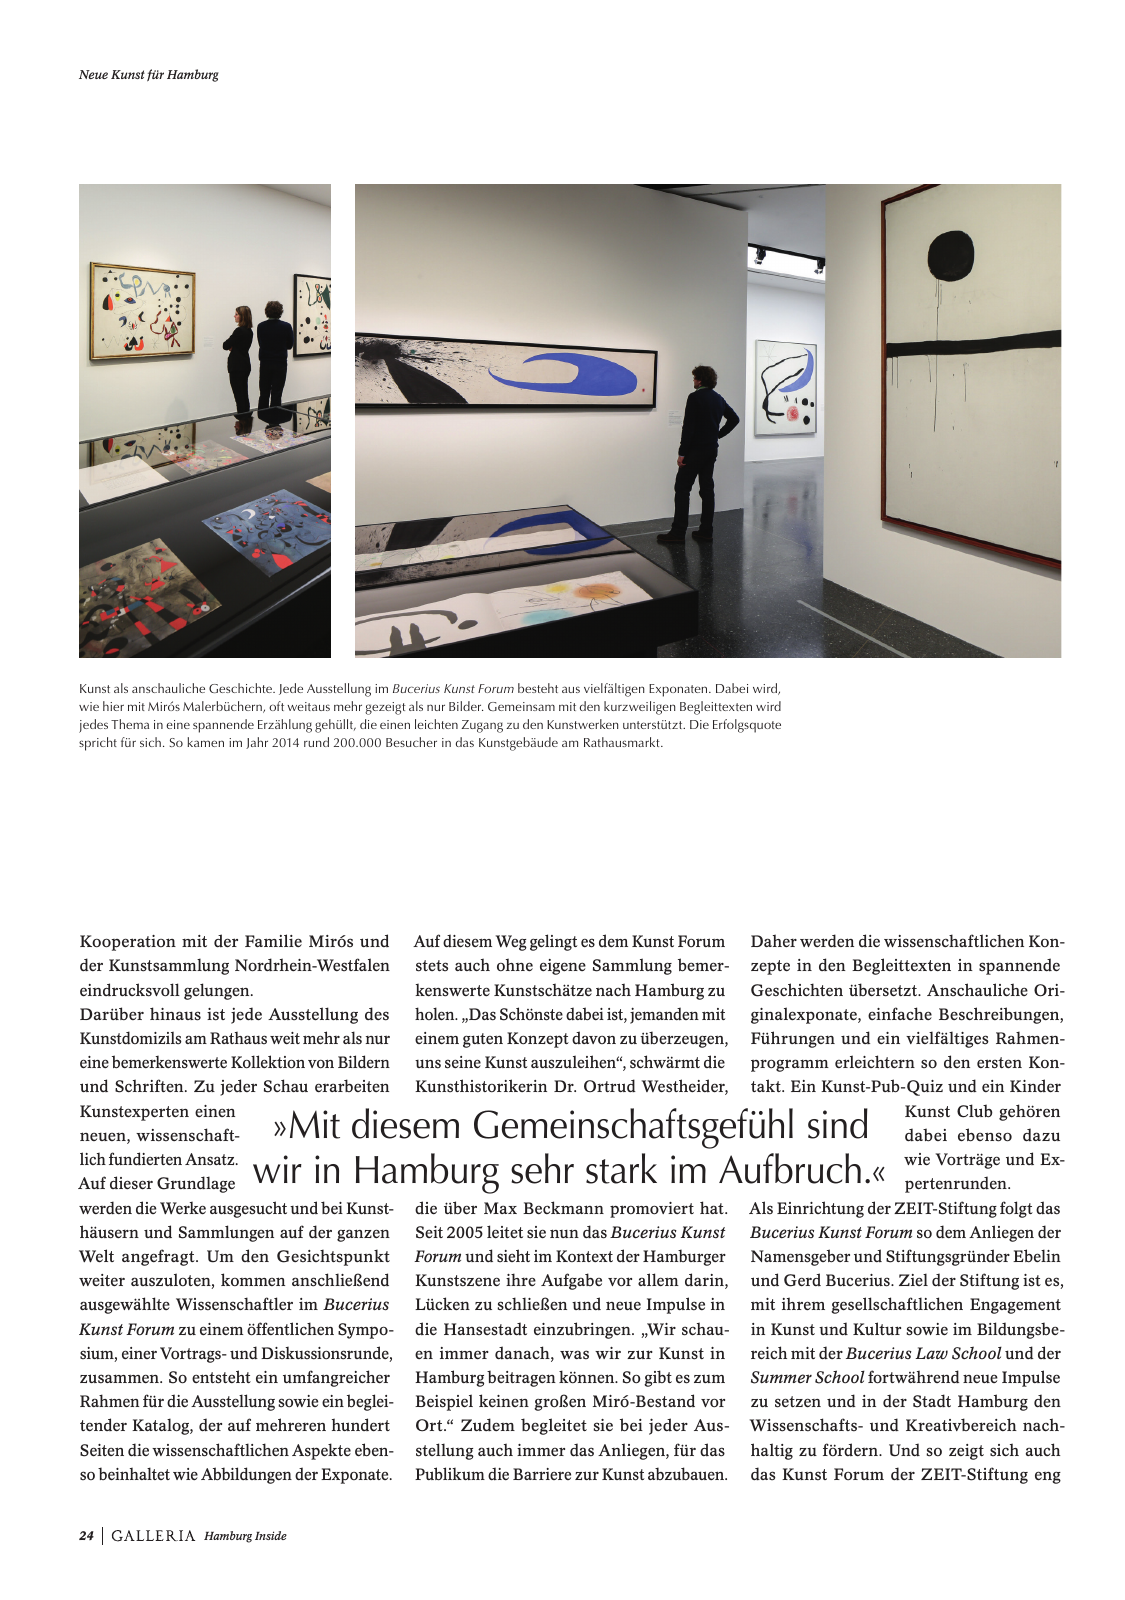 Vorschau GALLERIA Magazin Hamburg Inside 2 Seite 24